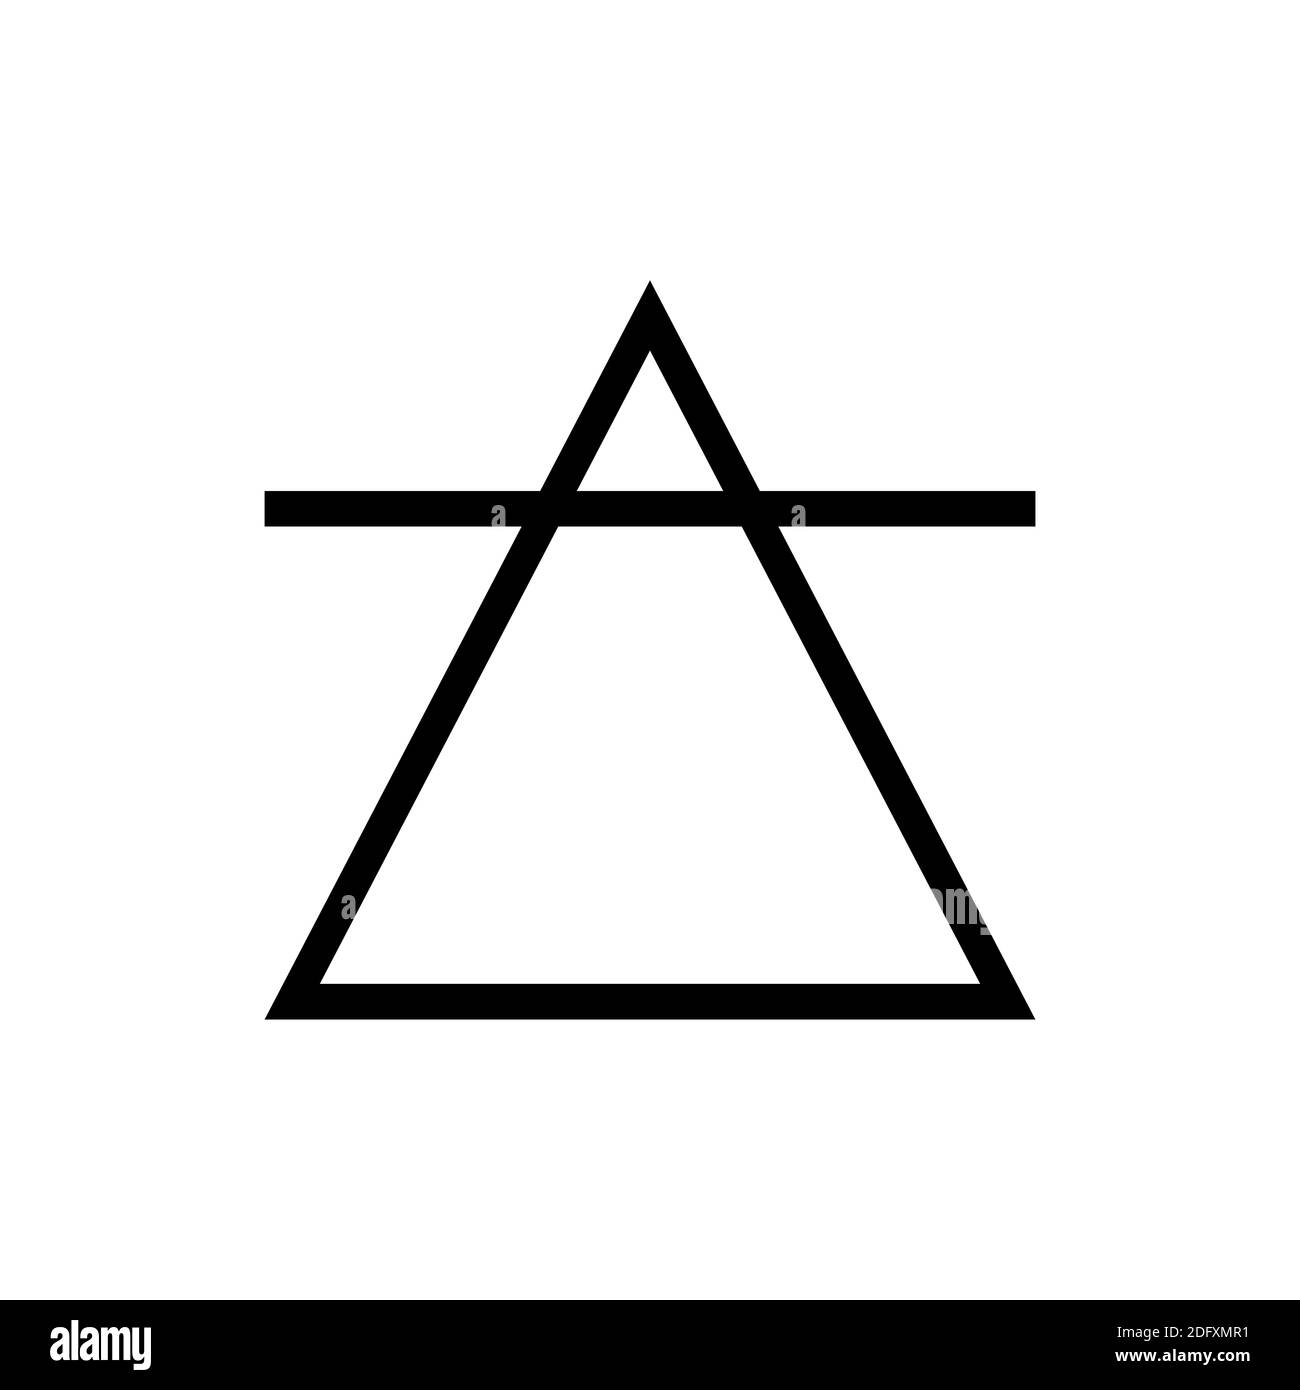 Das Symbol der Luft, eines der Symbole der Alchemie. Schwarz-weißes Air- Symbol Stockfotografie - Alamy